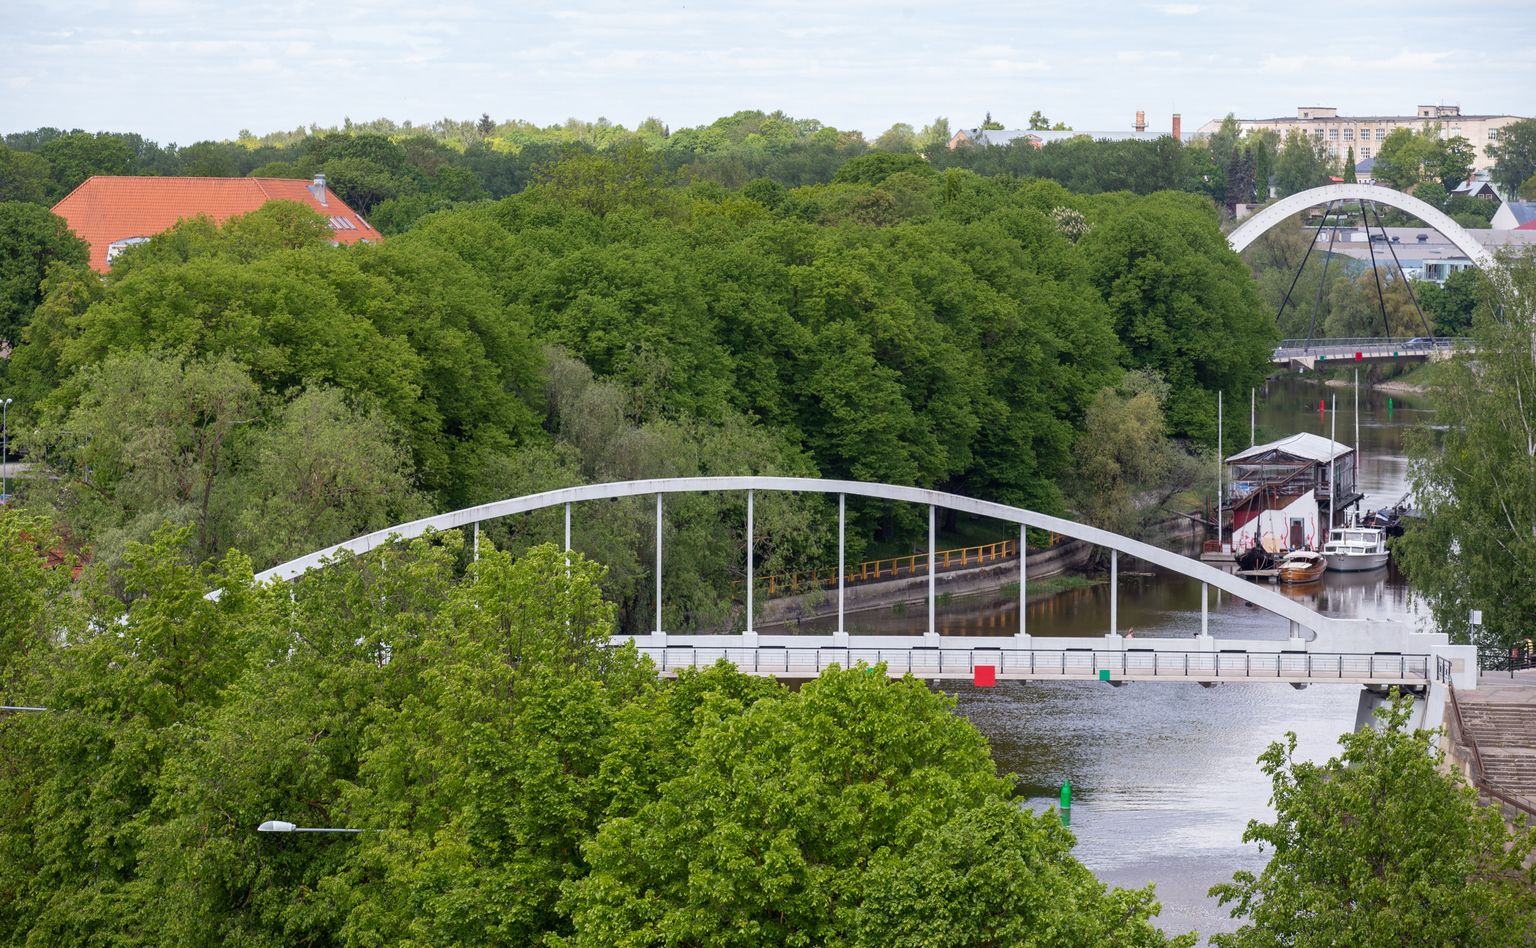 1. juunil toimusid Tartu linnavolikogu esimehe Lemmit Kaplinski ellu kutsutud kärajad, kus koos tartlastega arutati jõeäärsete alade üle uues üldplaneeringus. Pildil kaarsild.